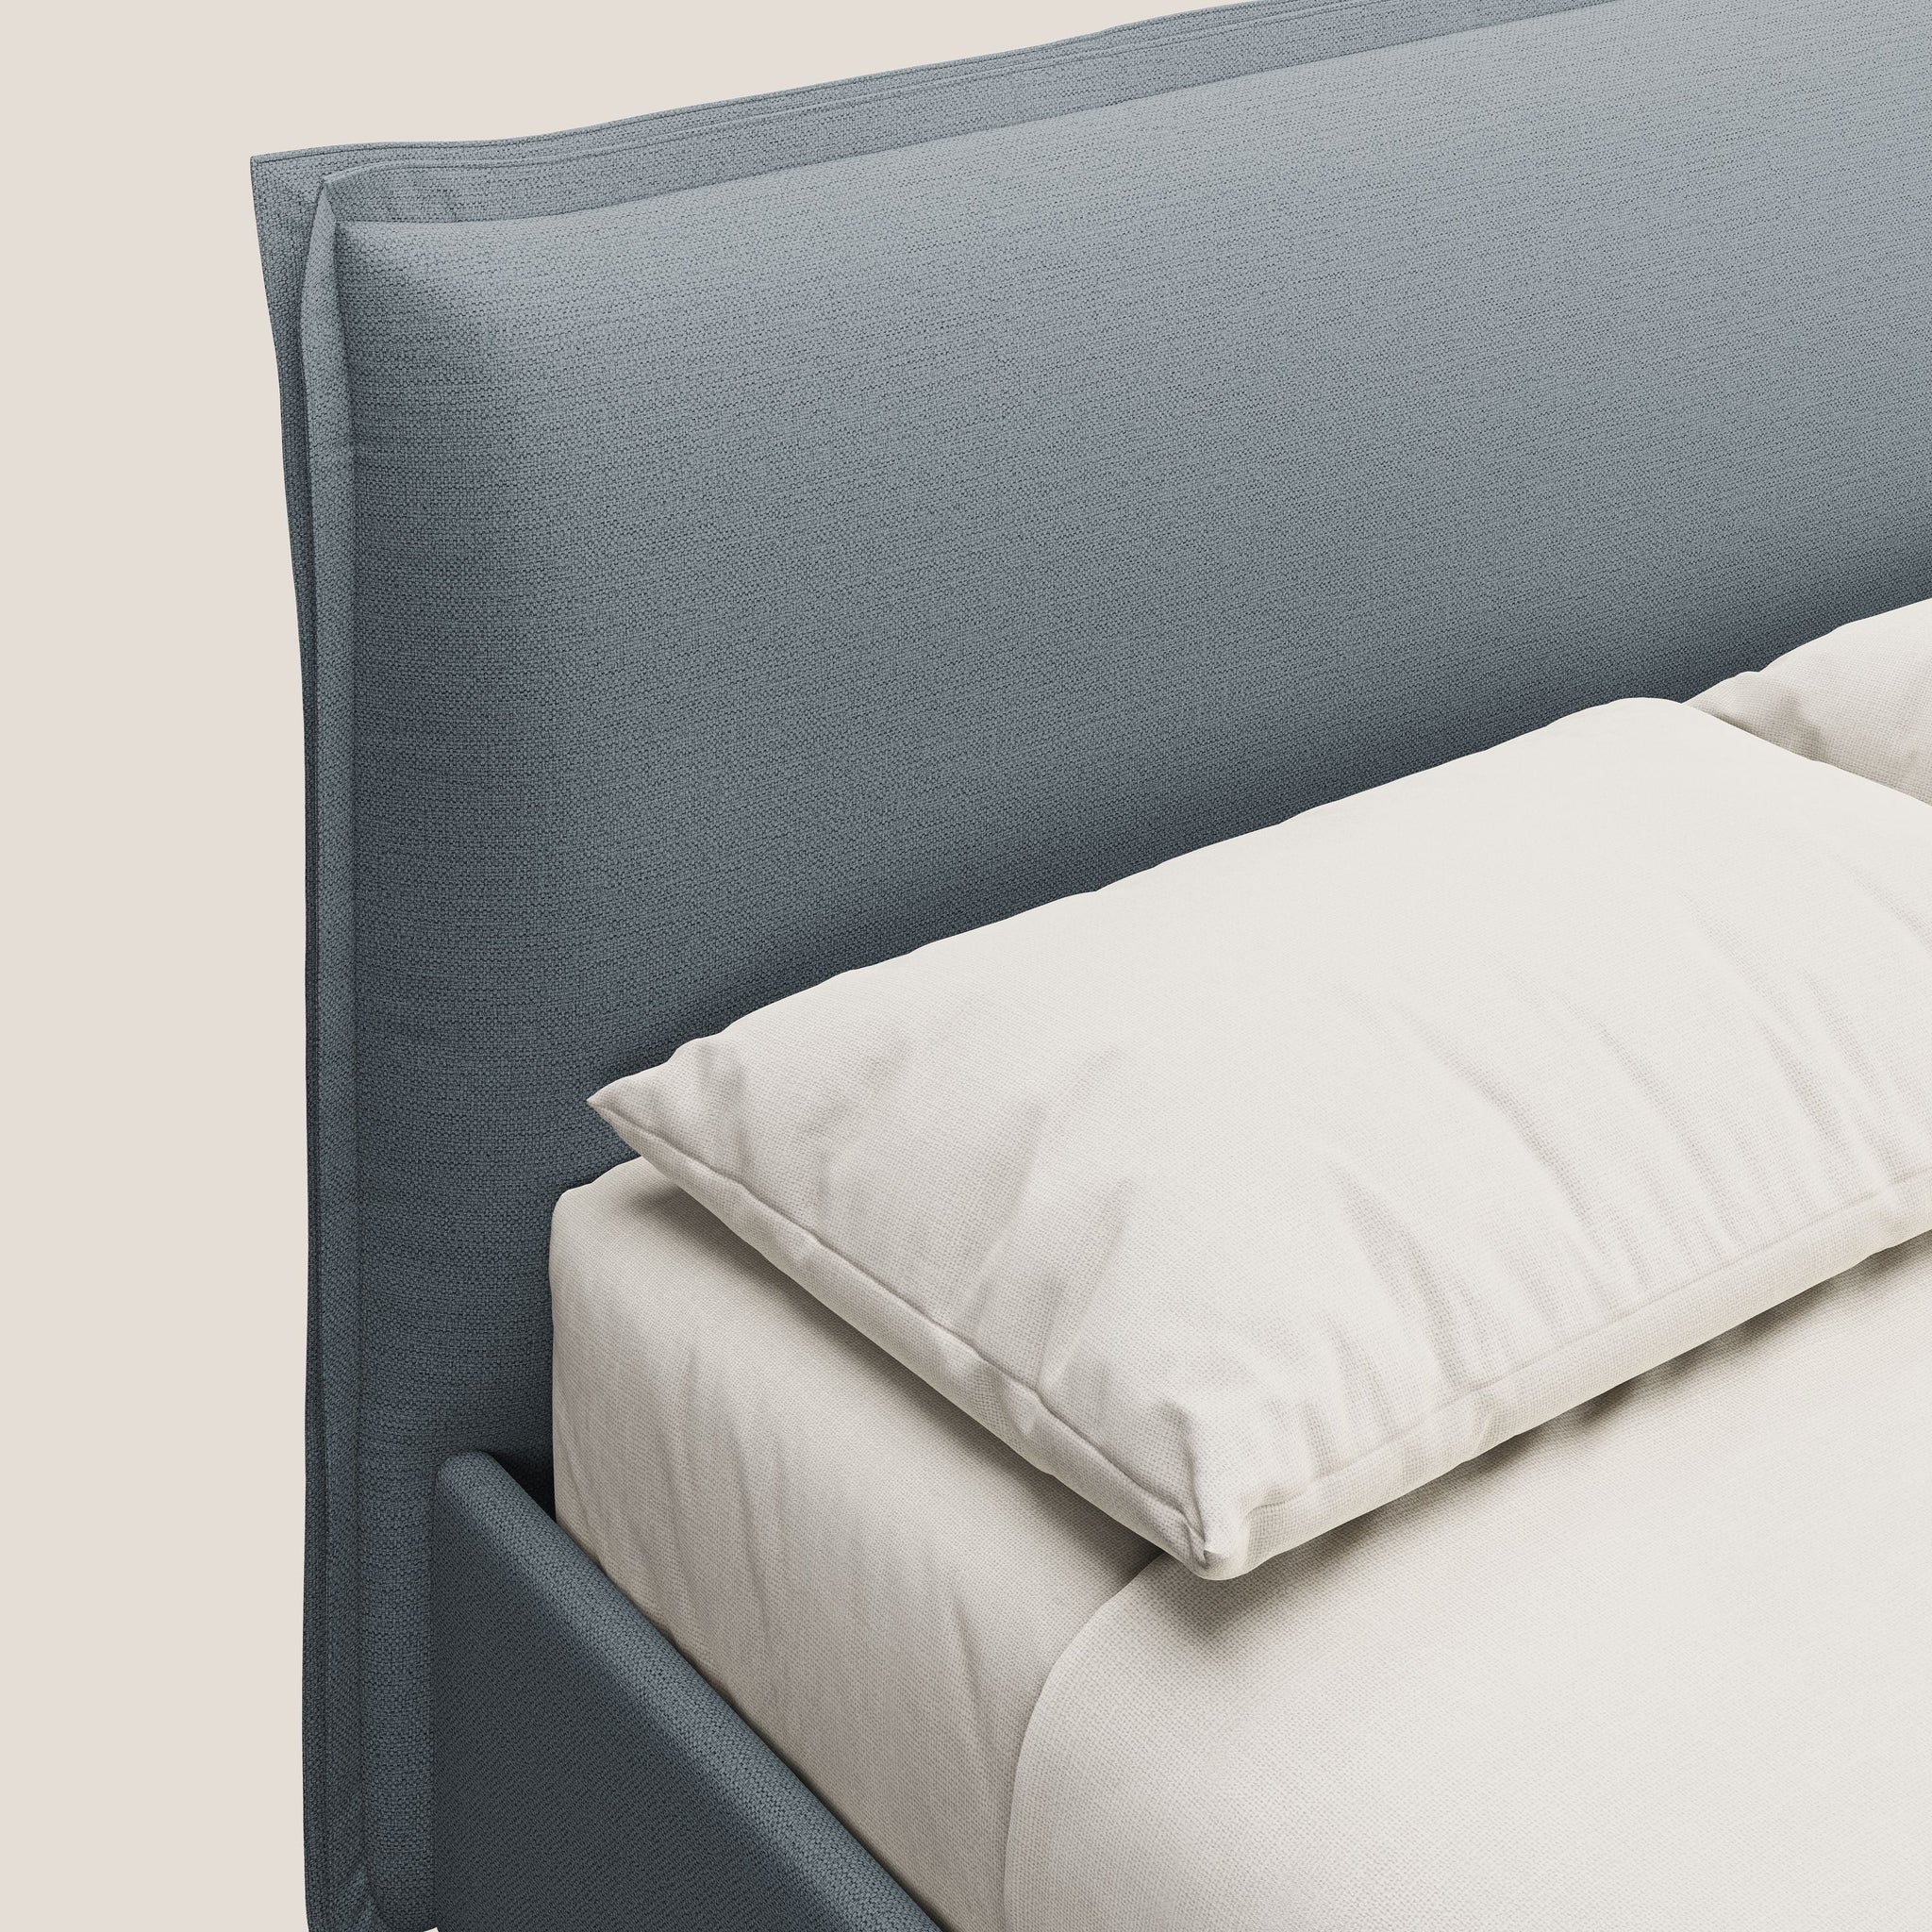 Hans lit rembourré avec coffre au style minimaliste en tissu imperméable T19